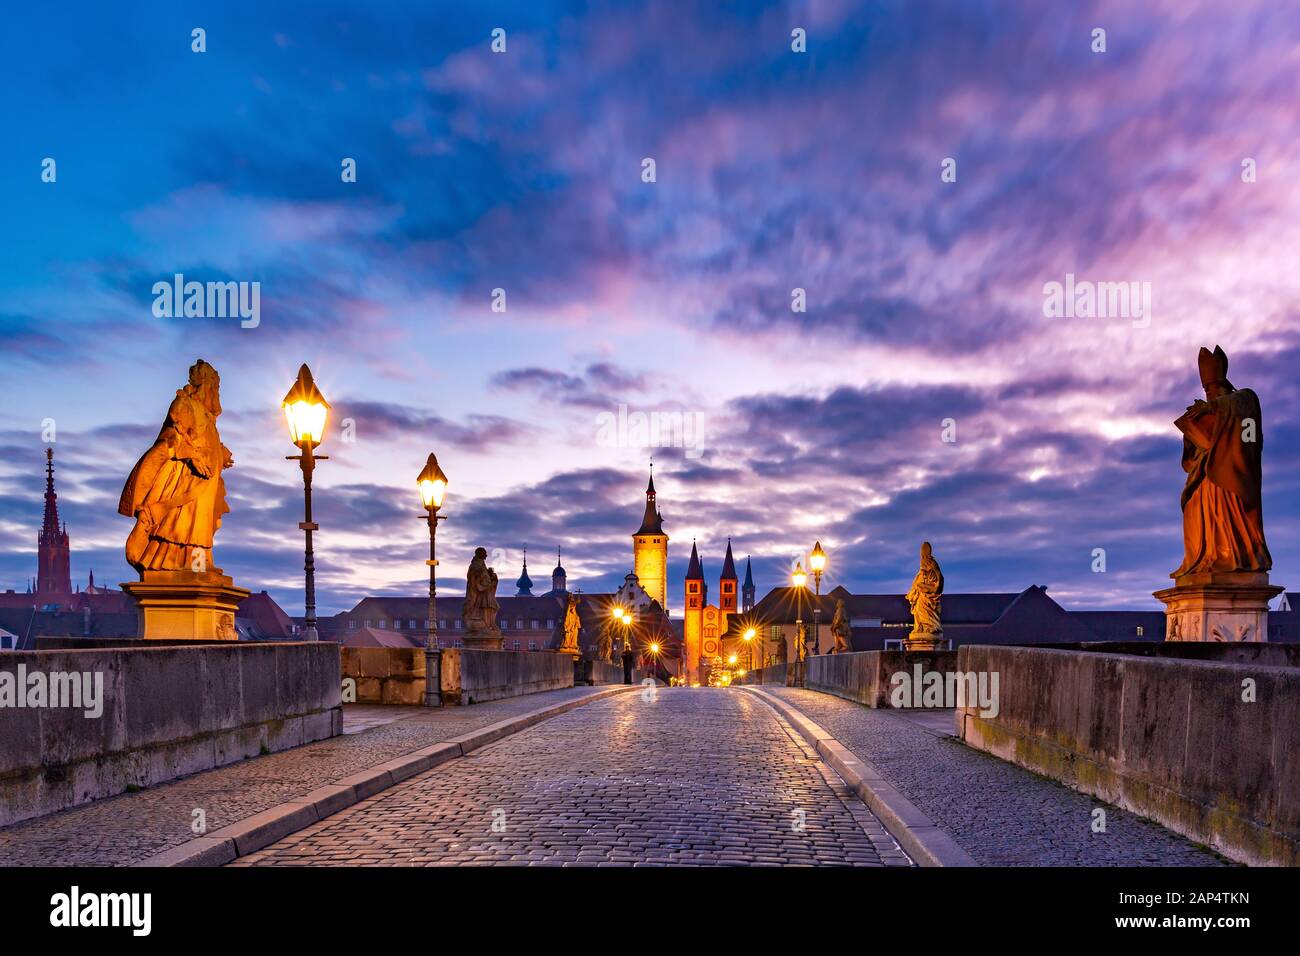 Alte Mainbrücke, Alte Mainbrucke mit Statuen von Heiligen, die Kathedrale und das Rathaus in der Altstadt von Würzburg bei Sonnenuntergang, Mittelfranken, Bayern, Deutschland Stockfoto